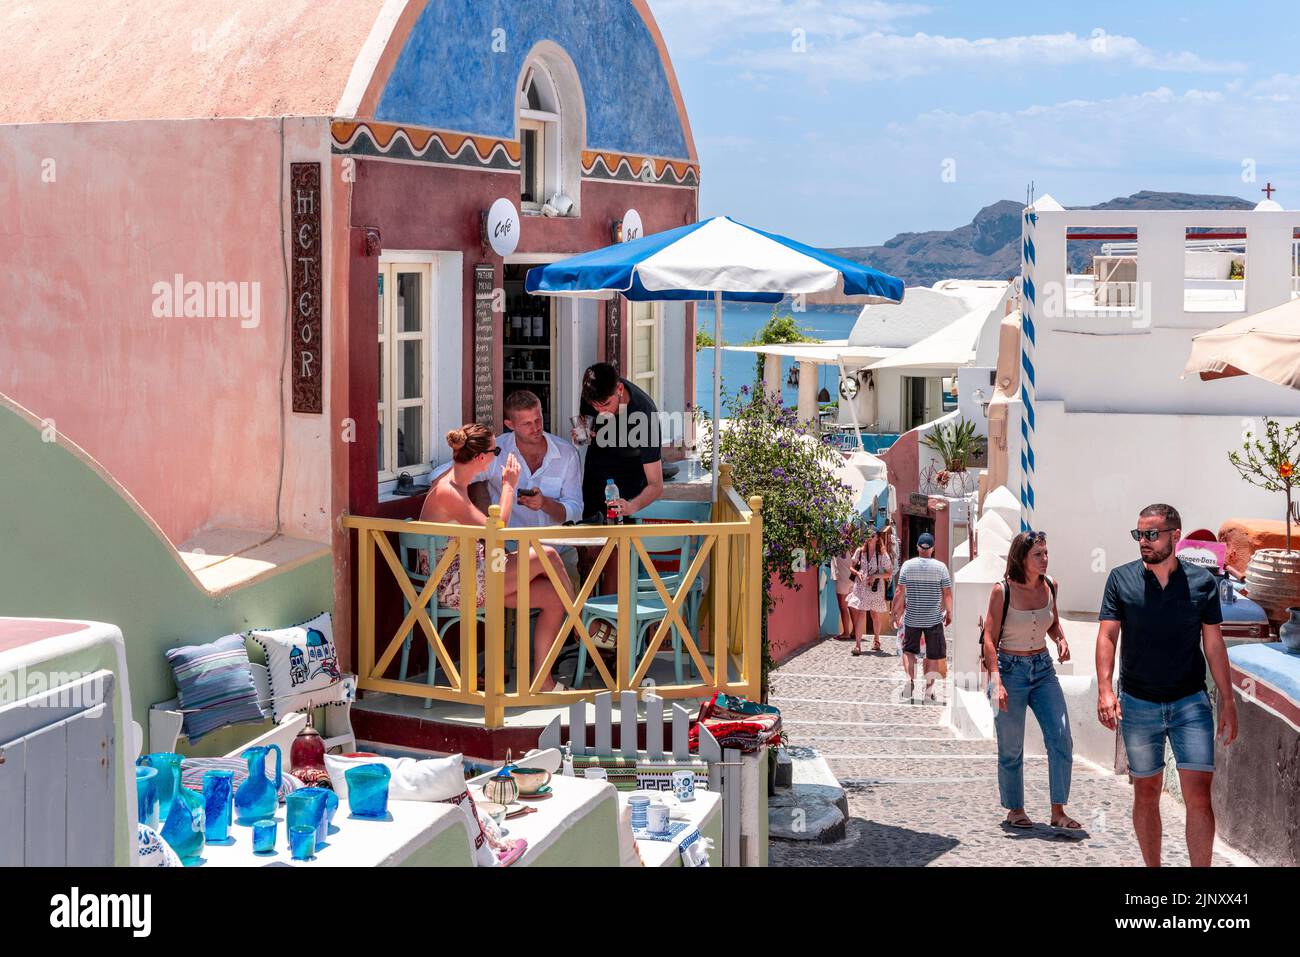 Un couple s'assoit avec des boissons sur la petite terrasse d'Un café dans la ville d'Oia, Santorini, les îles grecques, la Grèce. Banque D'Images